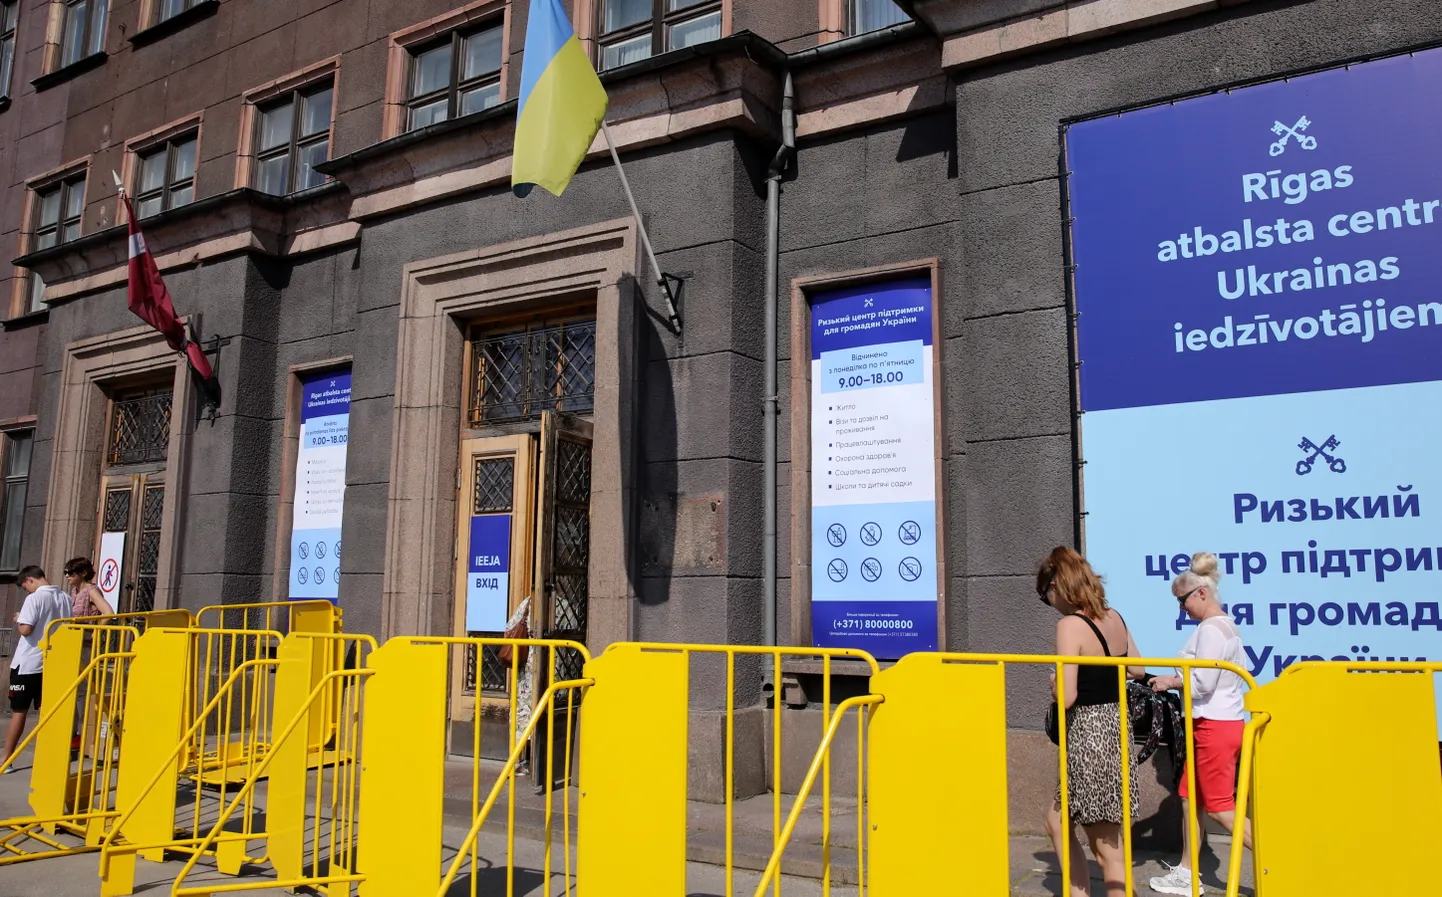 Rīgas nami хочет повысить арендную плату за муниципальную недвижимость